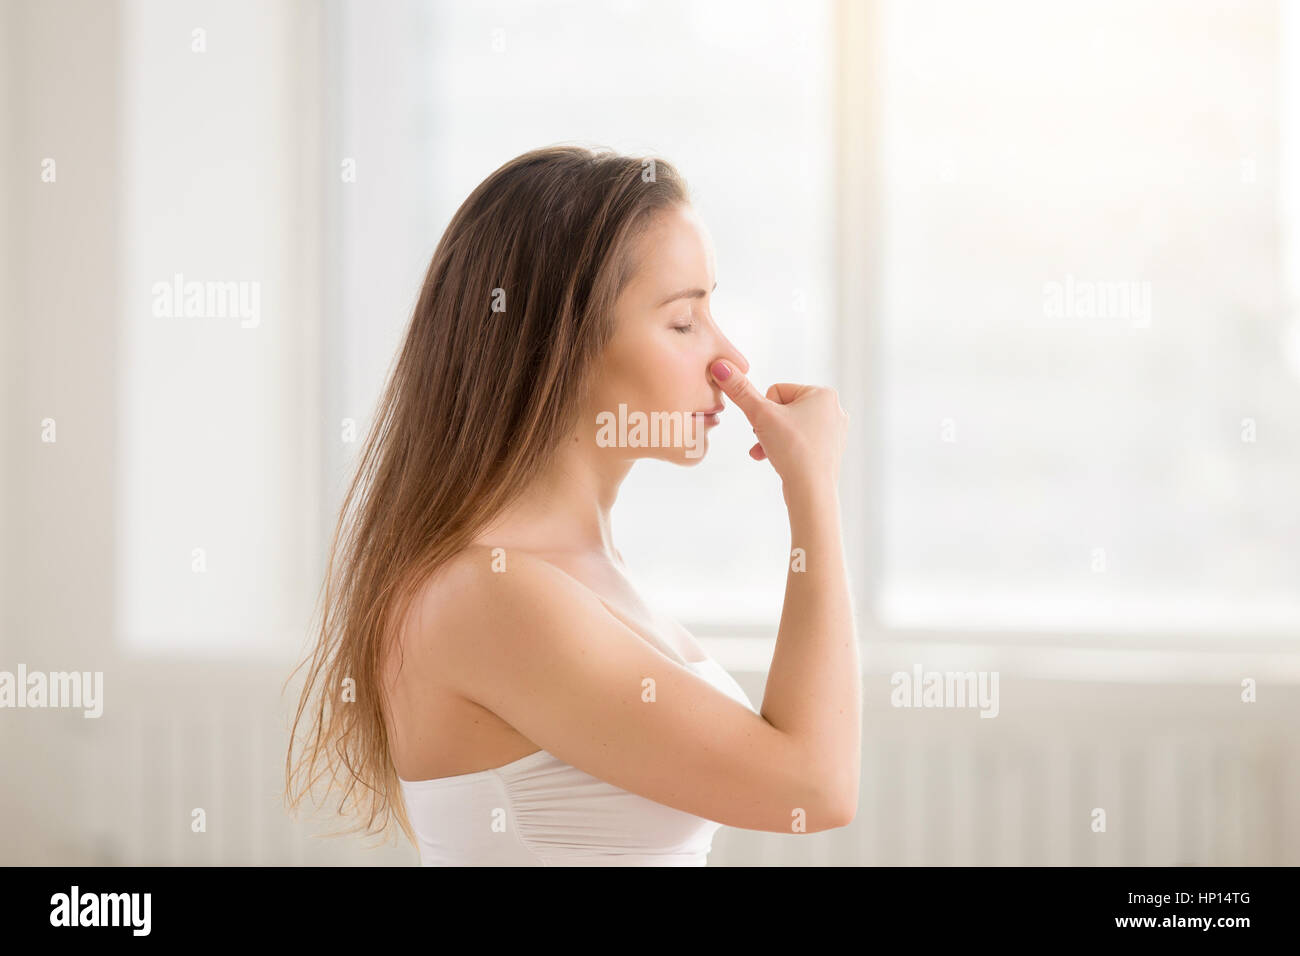 Jeune femme séduisante prennent d'autres, blanc de respiration nasale Banque D'Images